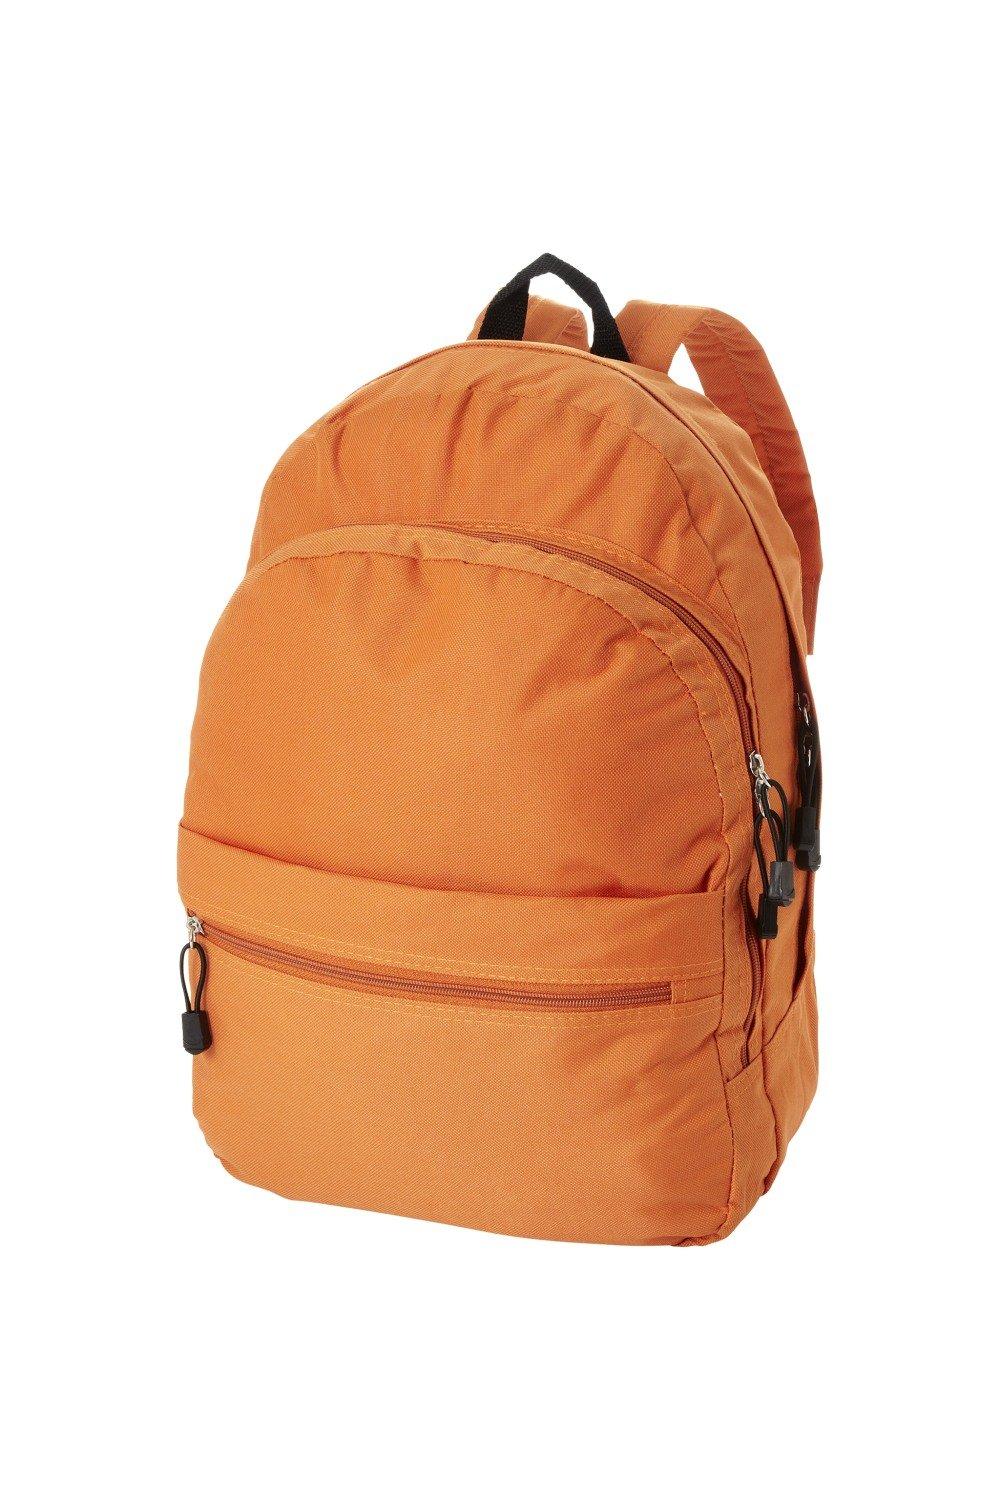 Трендовый рюкзак Bullet, оранжевый рюкзак с карманом единорог